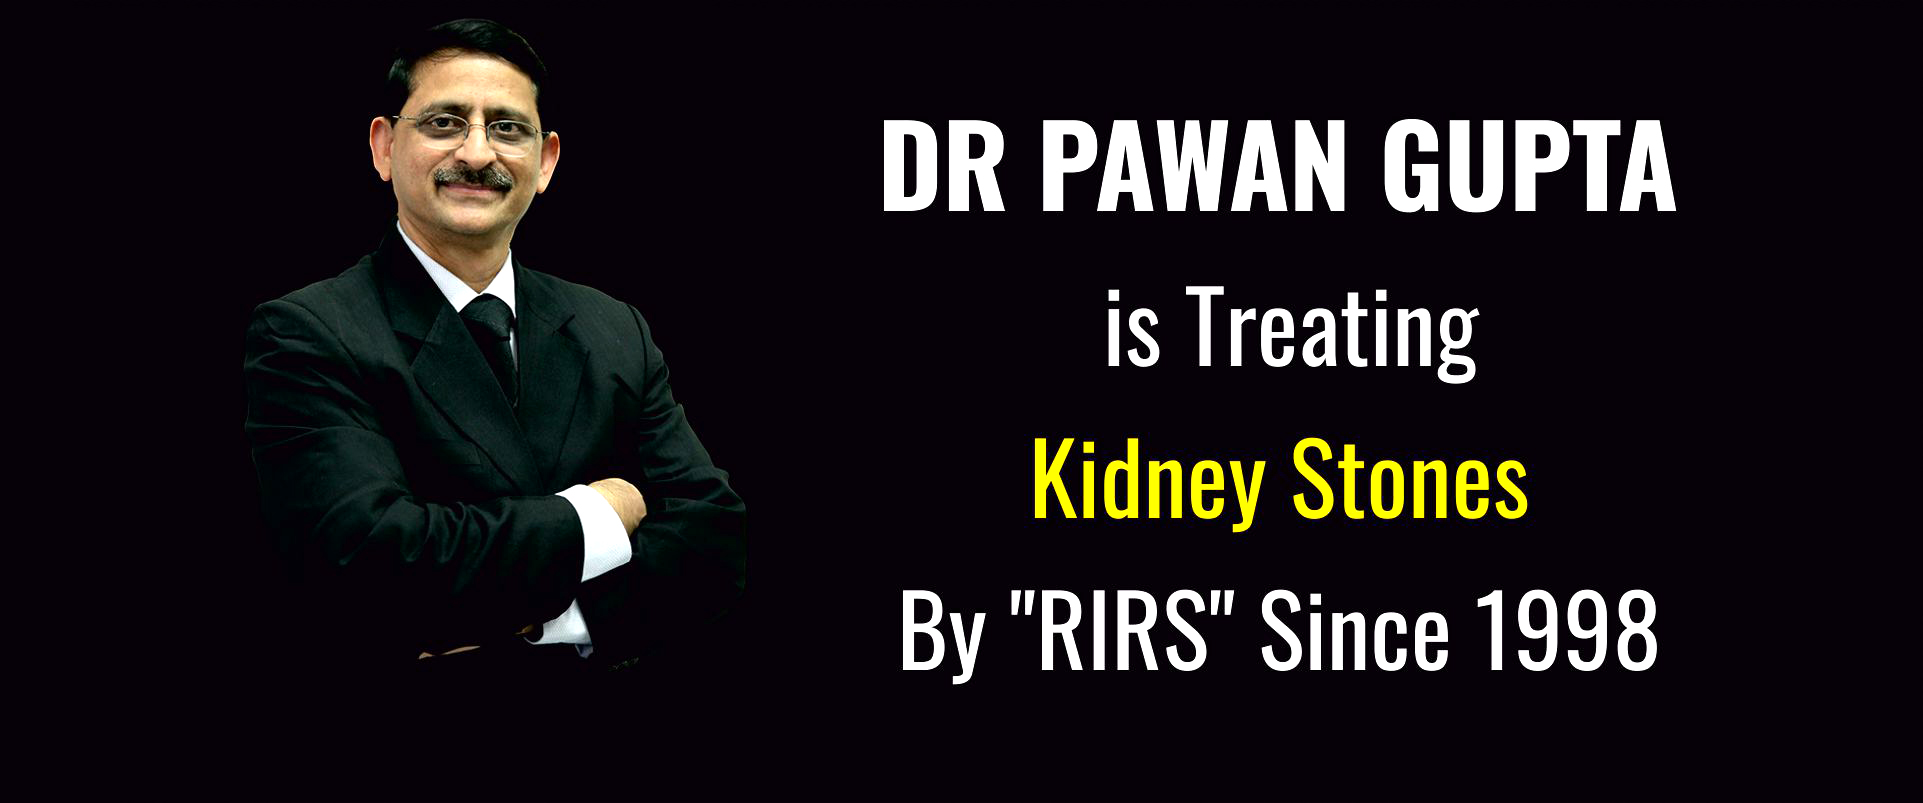 treatment-of-kidney-stones